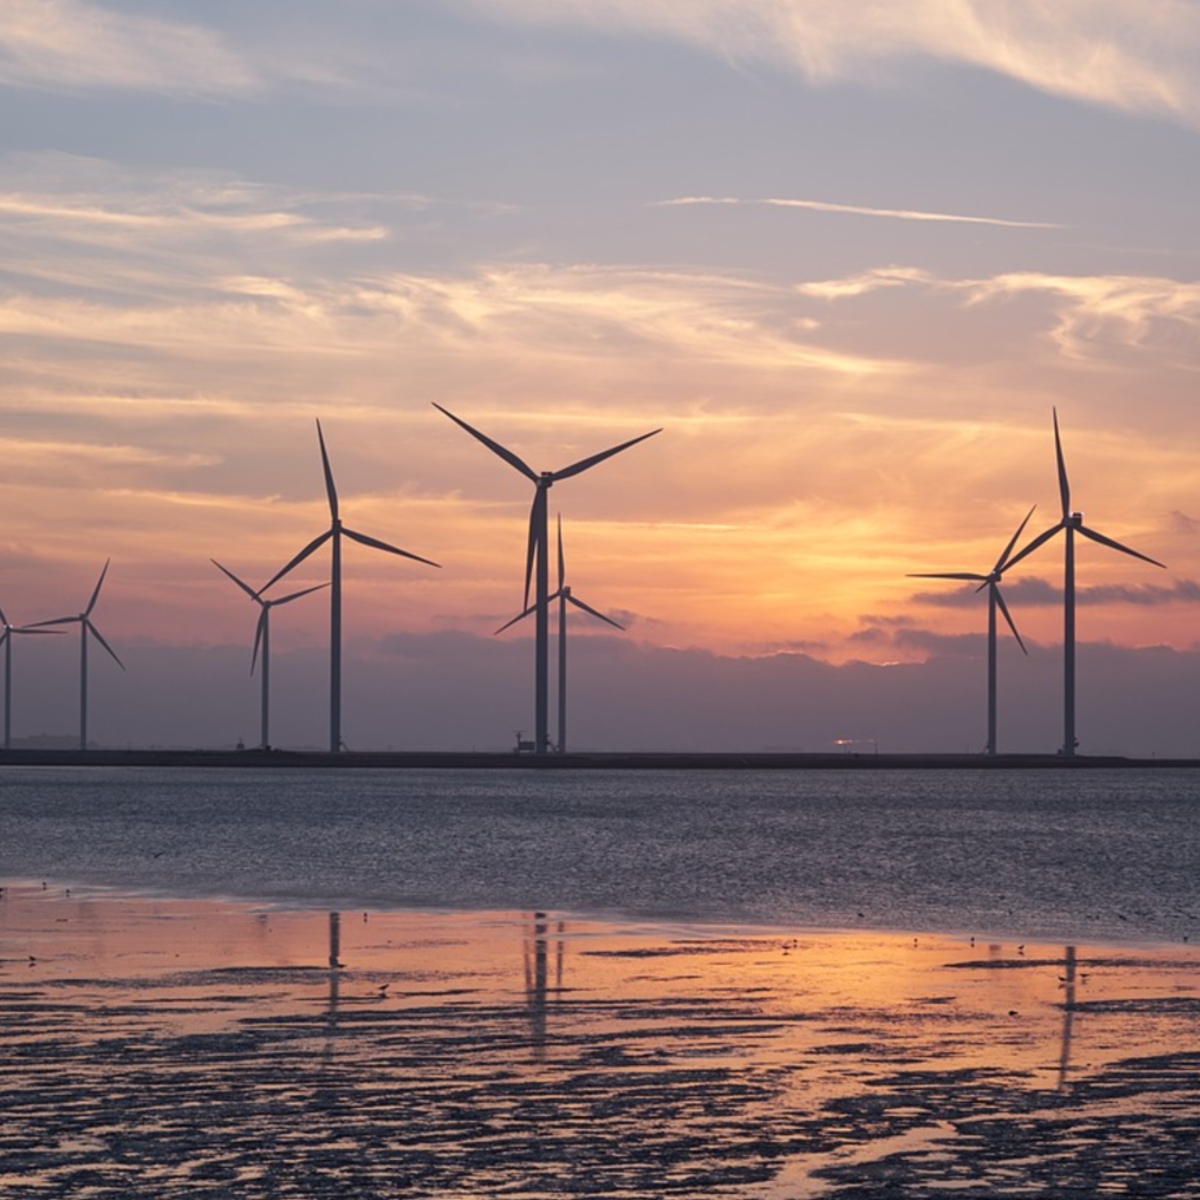 Total poursuit ses investissements dans l'éolien et devient partenaire d'un projet offshore géant écossais